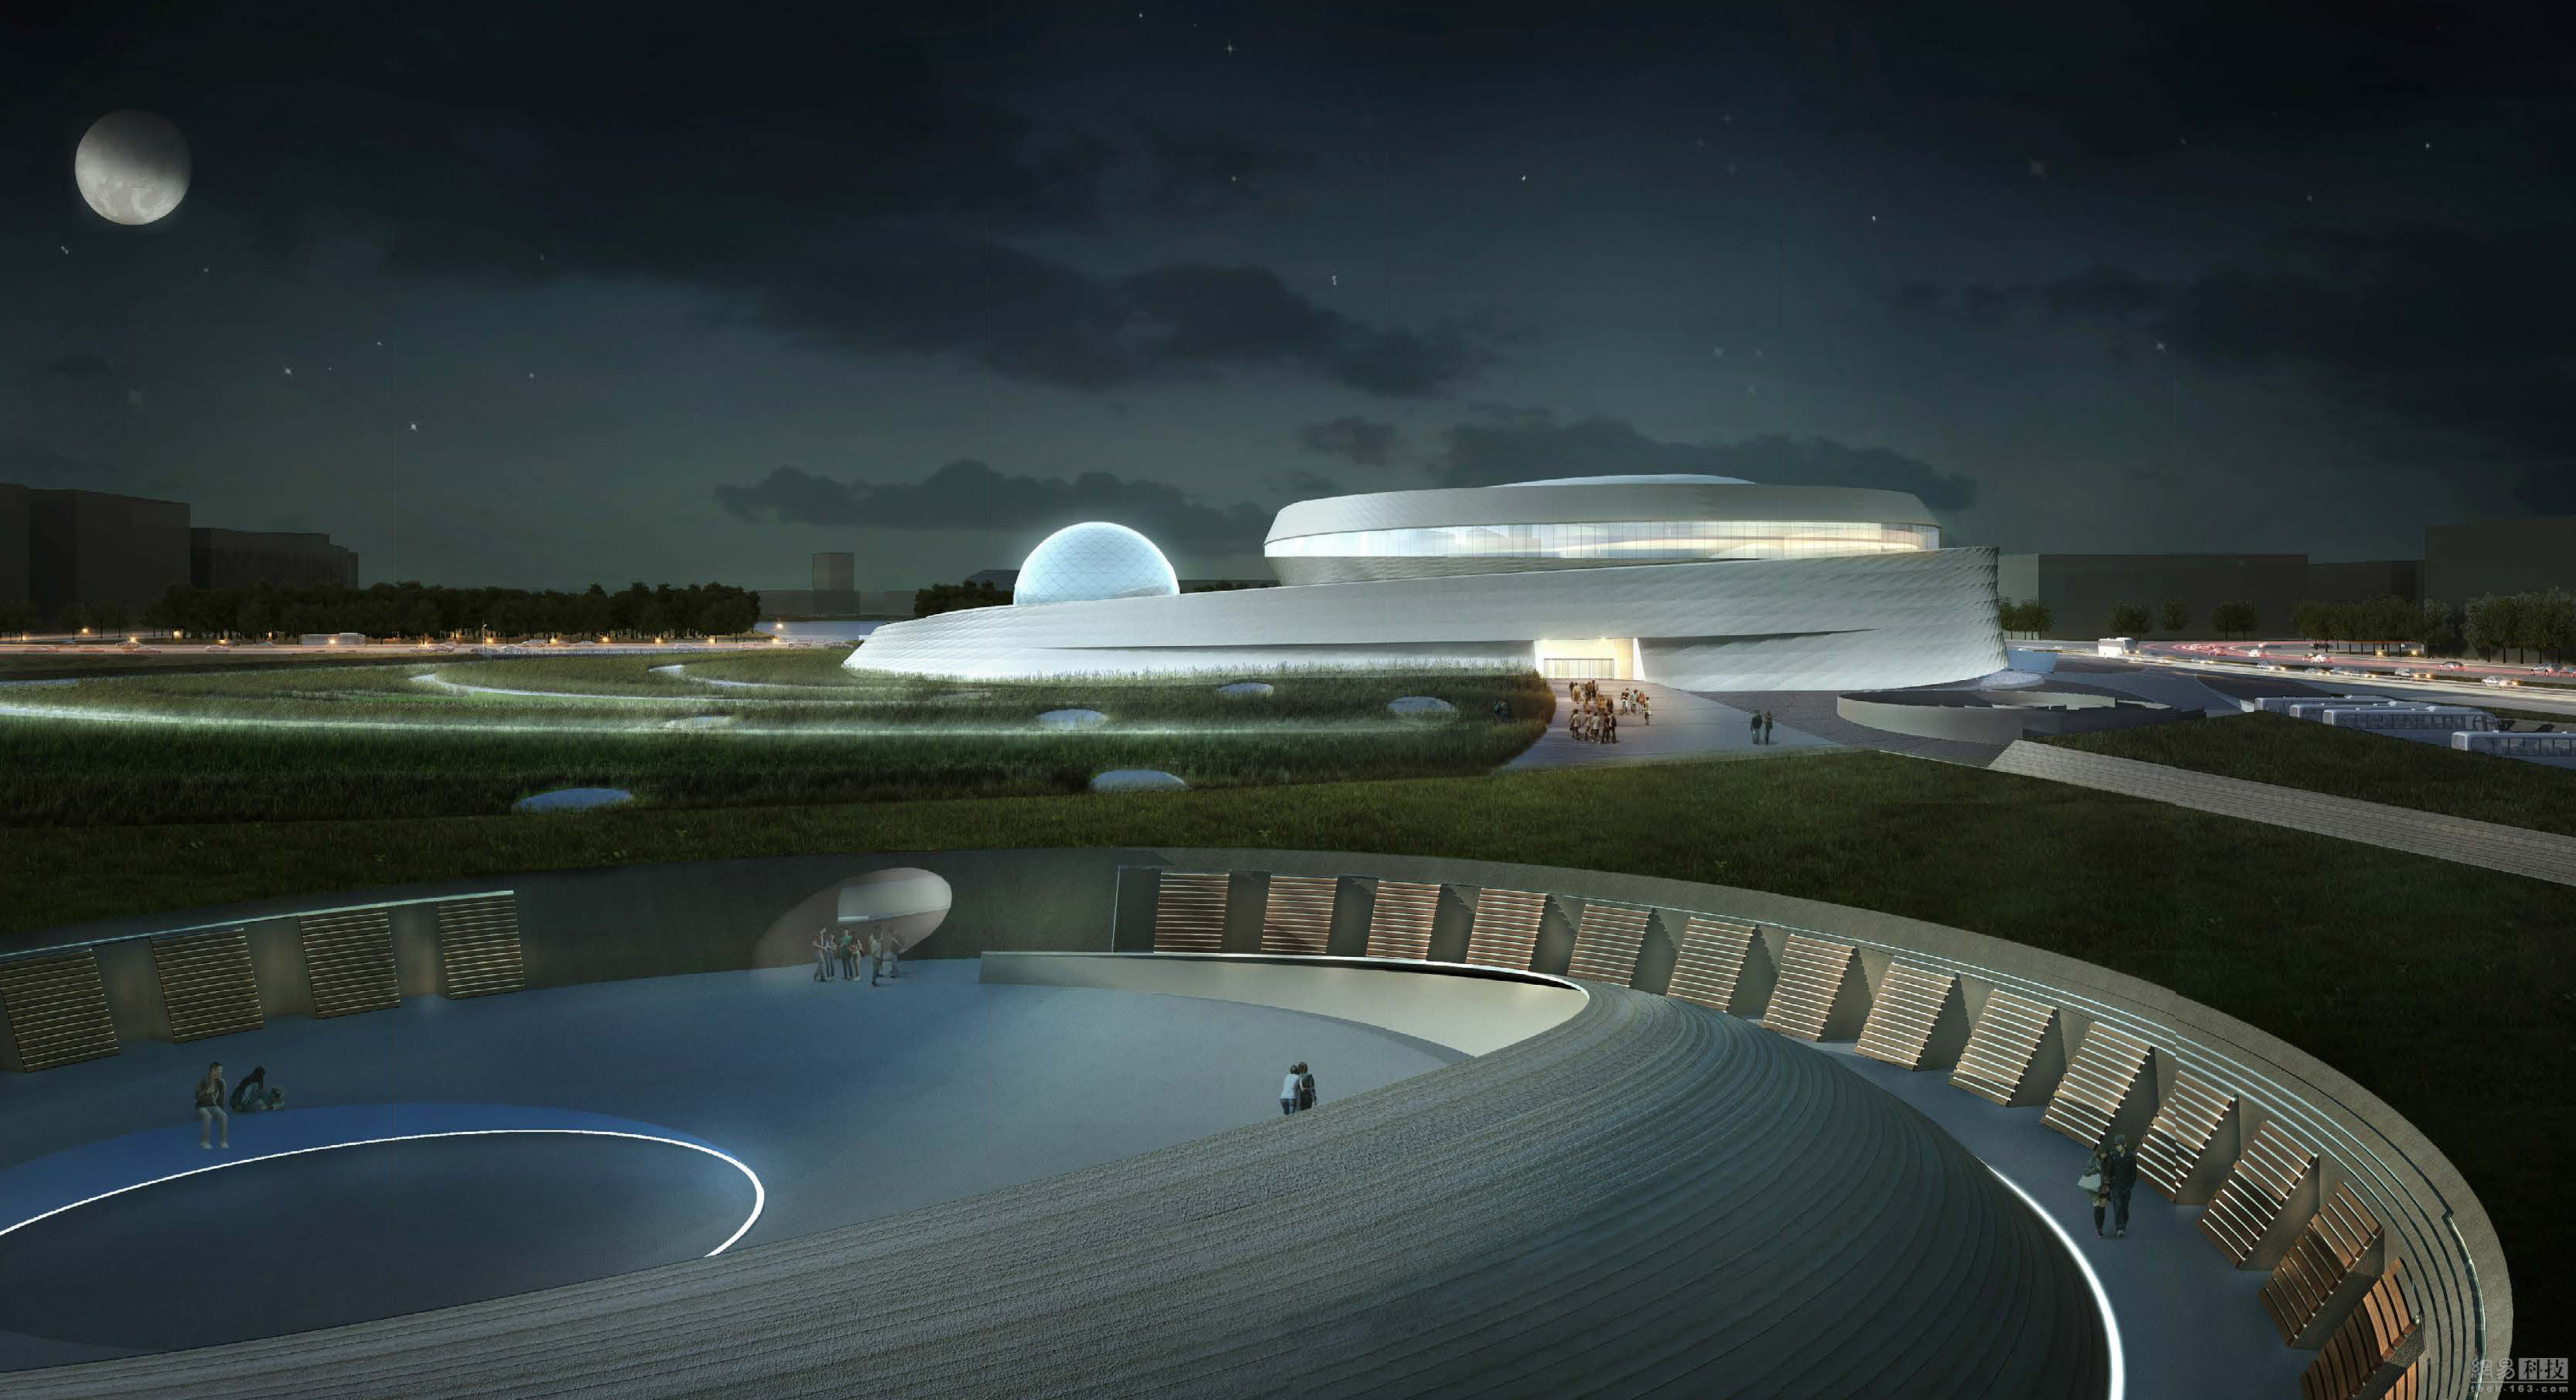 上海天文馆正式开工 建成后将成全球最大天文馆